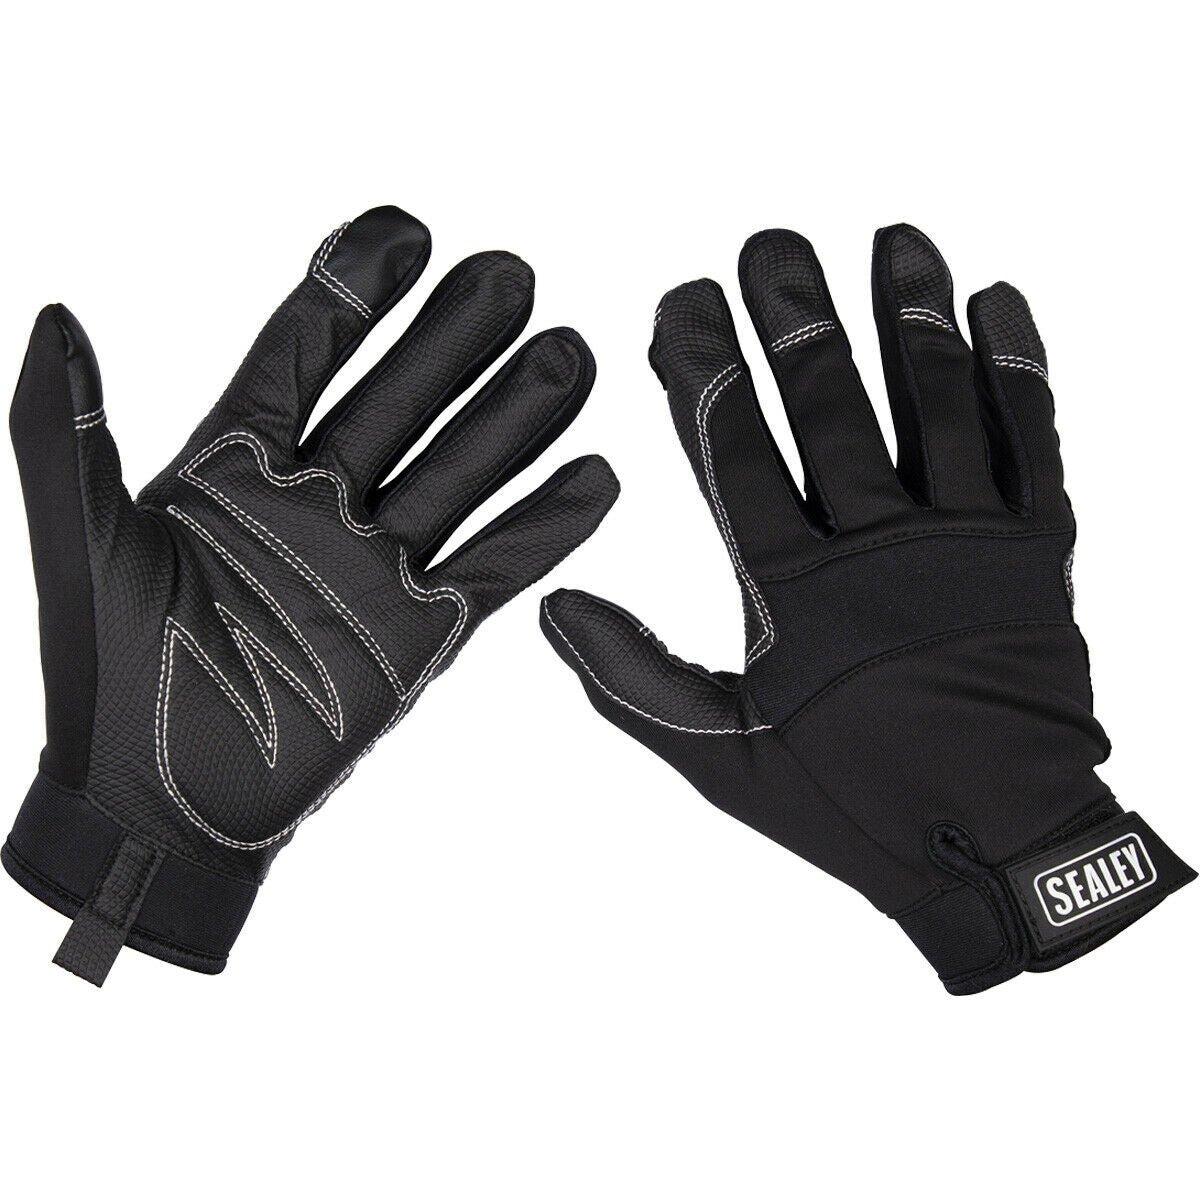 ПАРА перчаток Light Palm Black для механиков — большие — с сенсорным экраном на указательном пальце Loops, черный